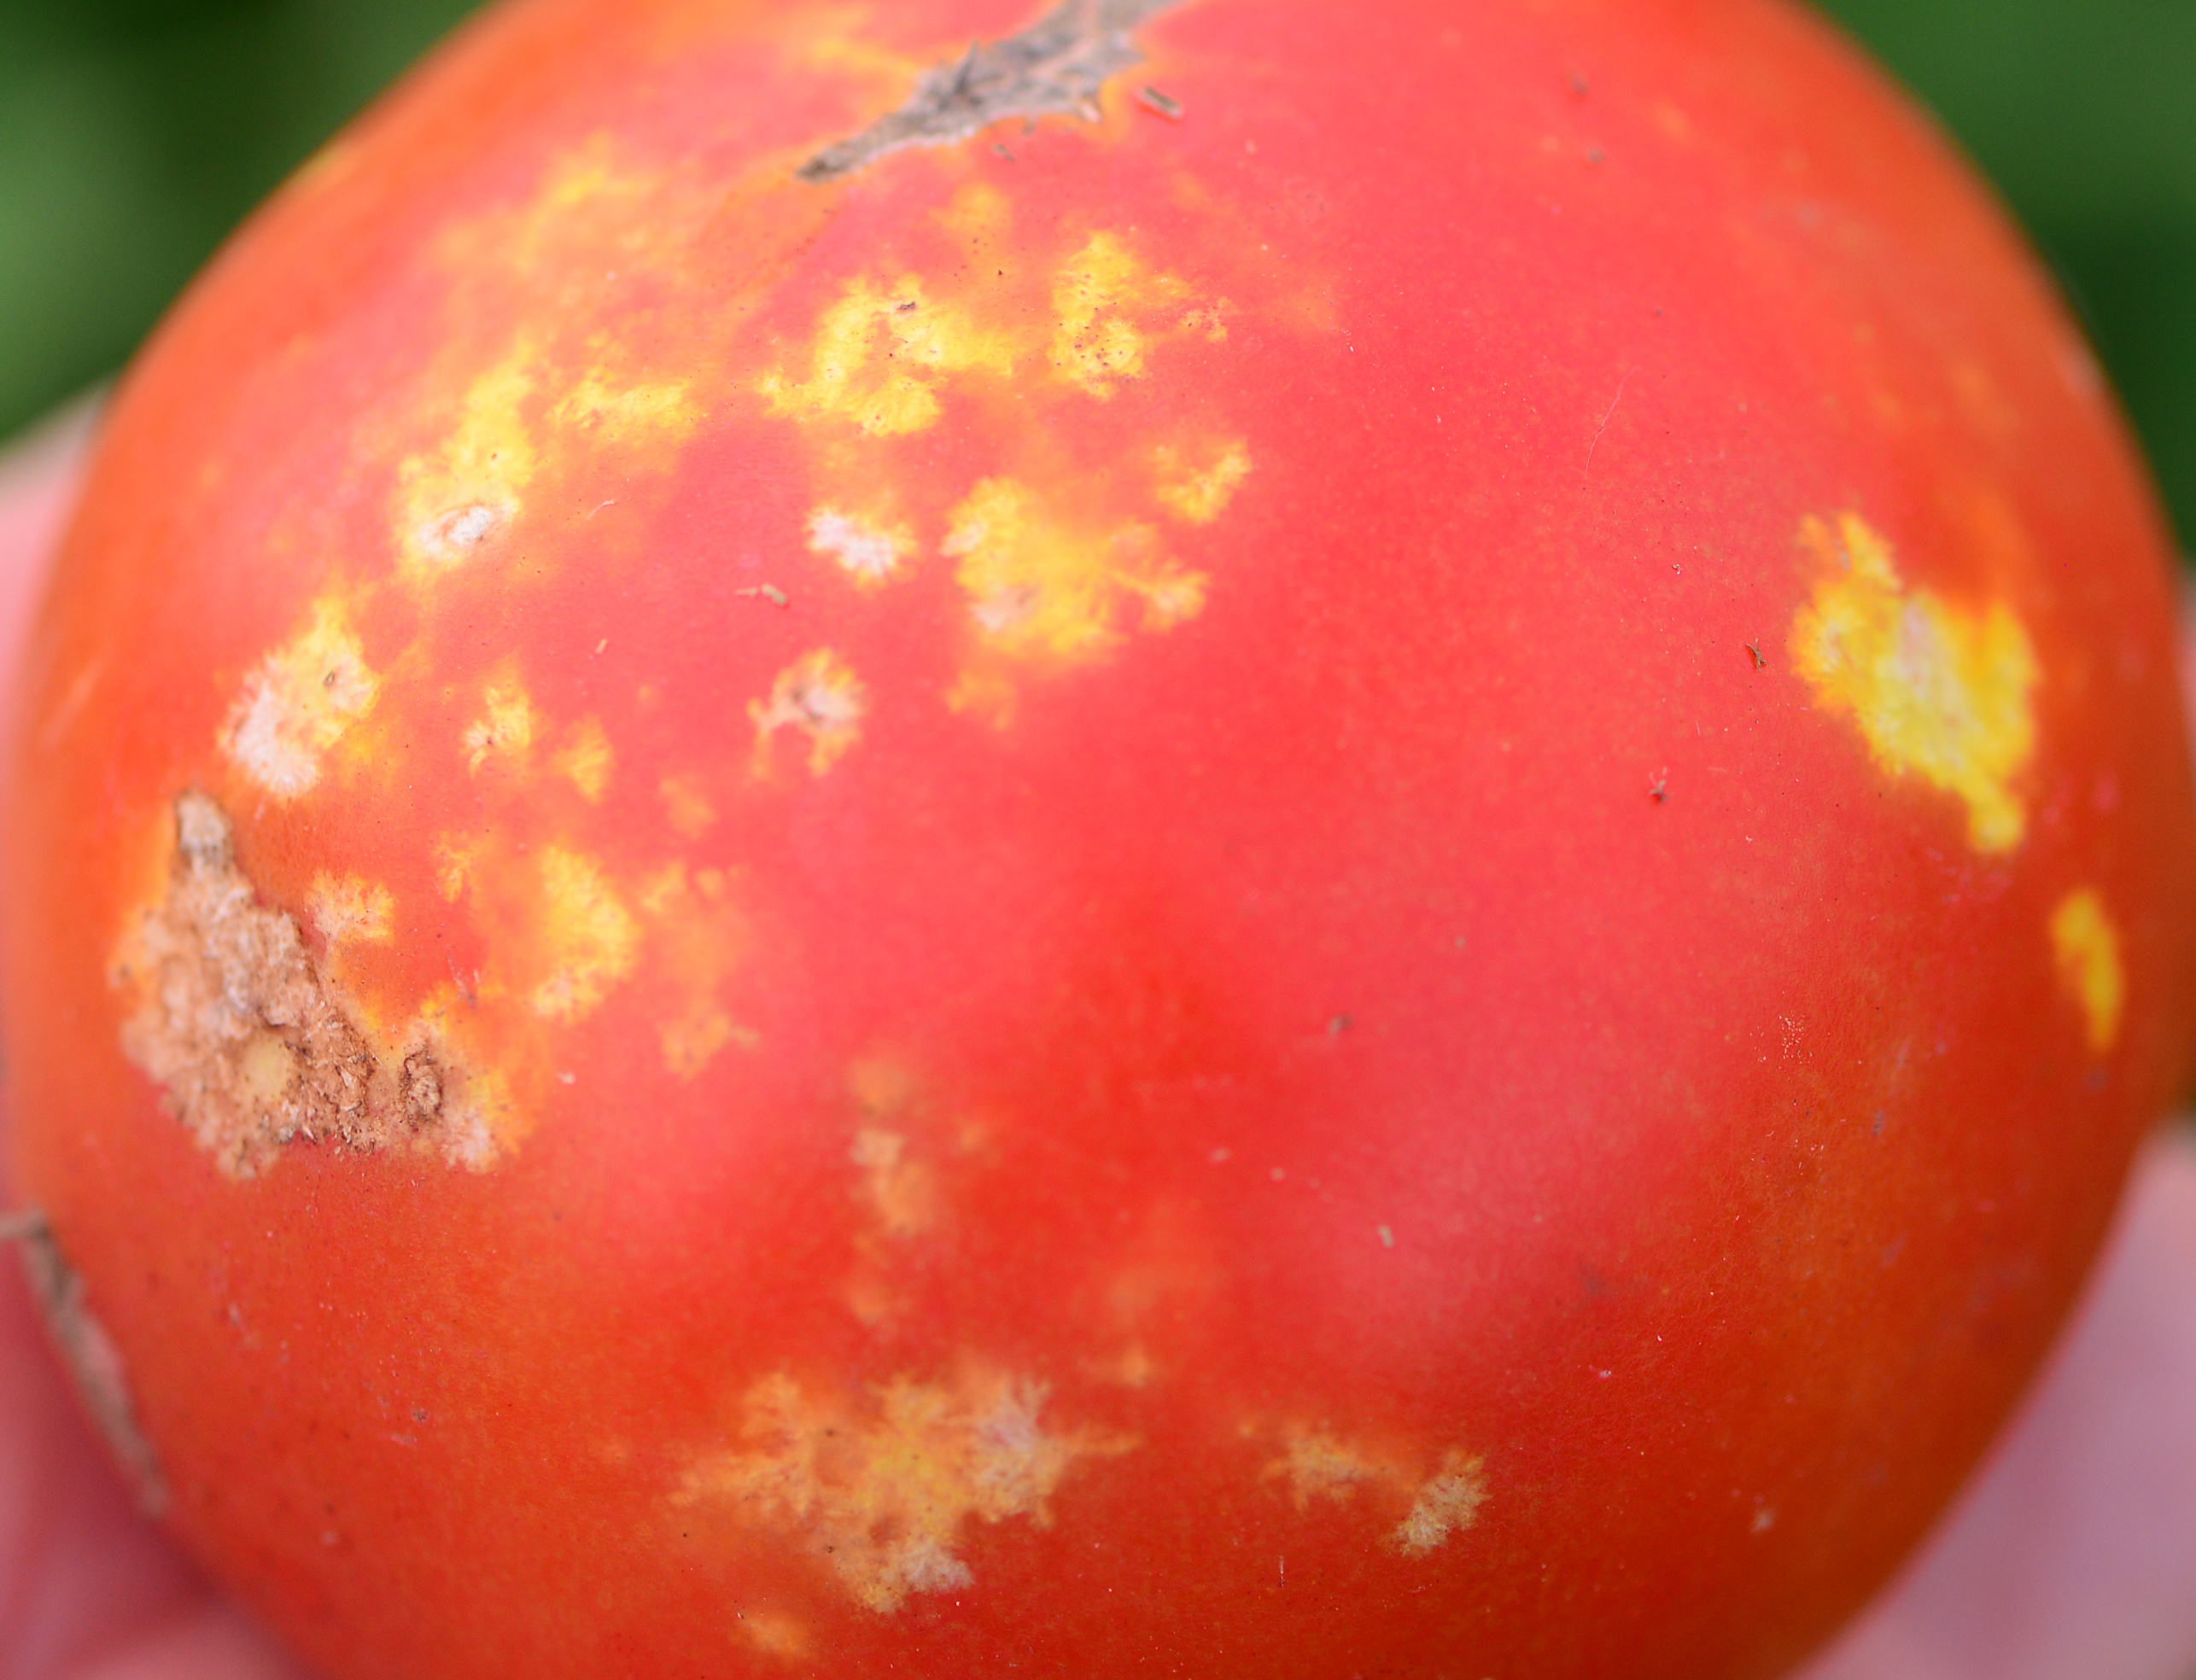 Stink bug damage to tomato.